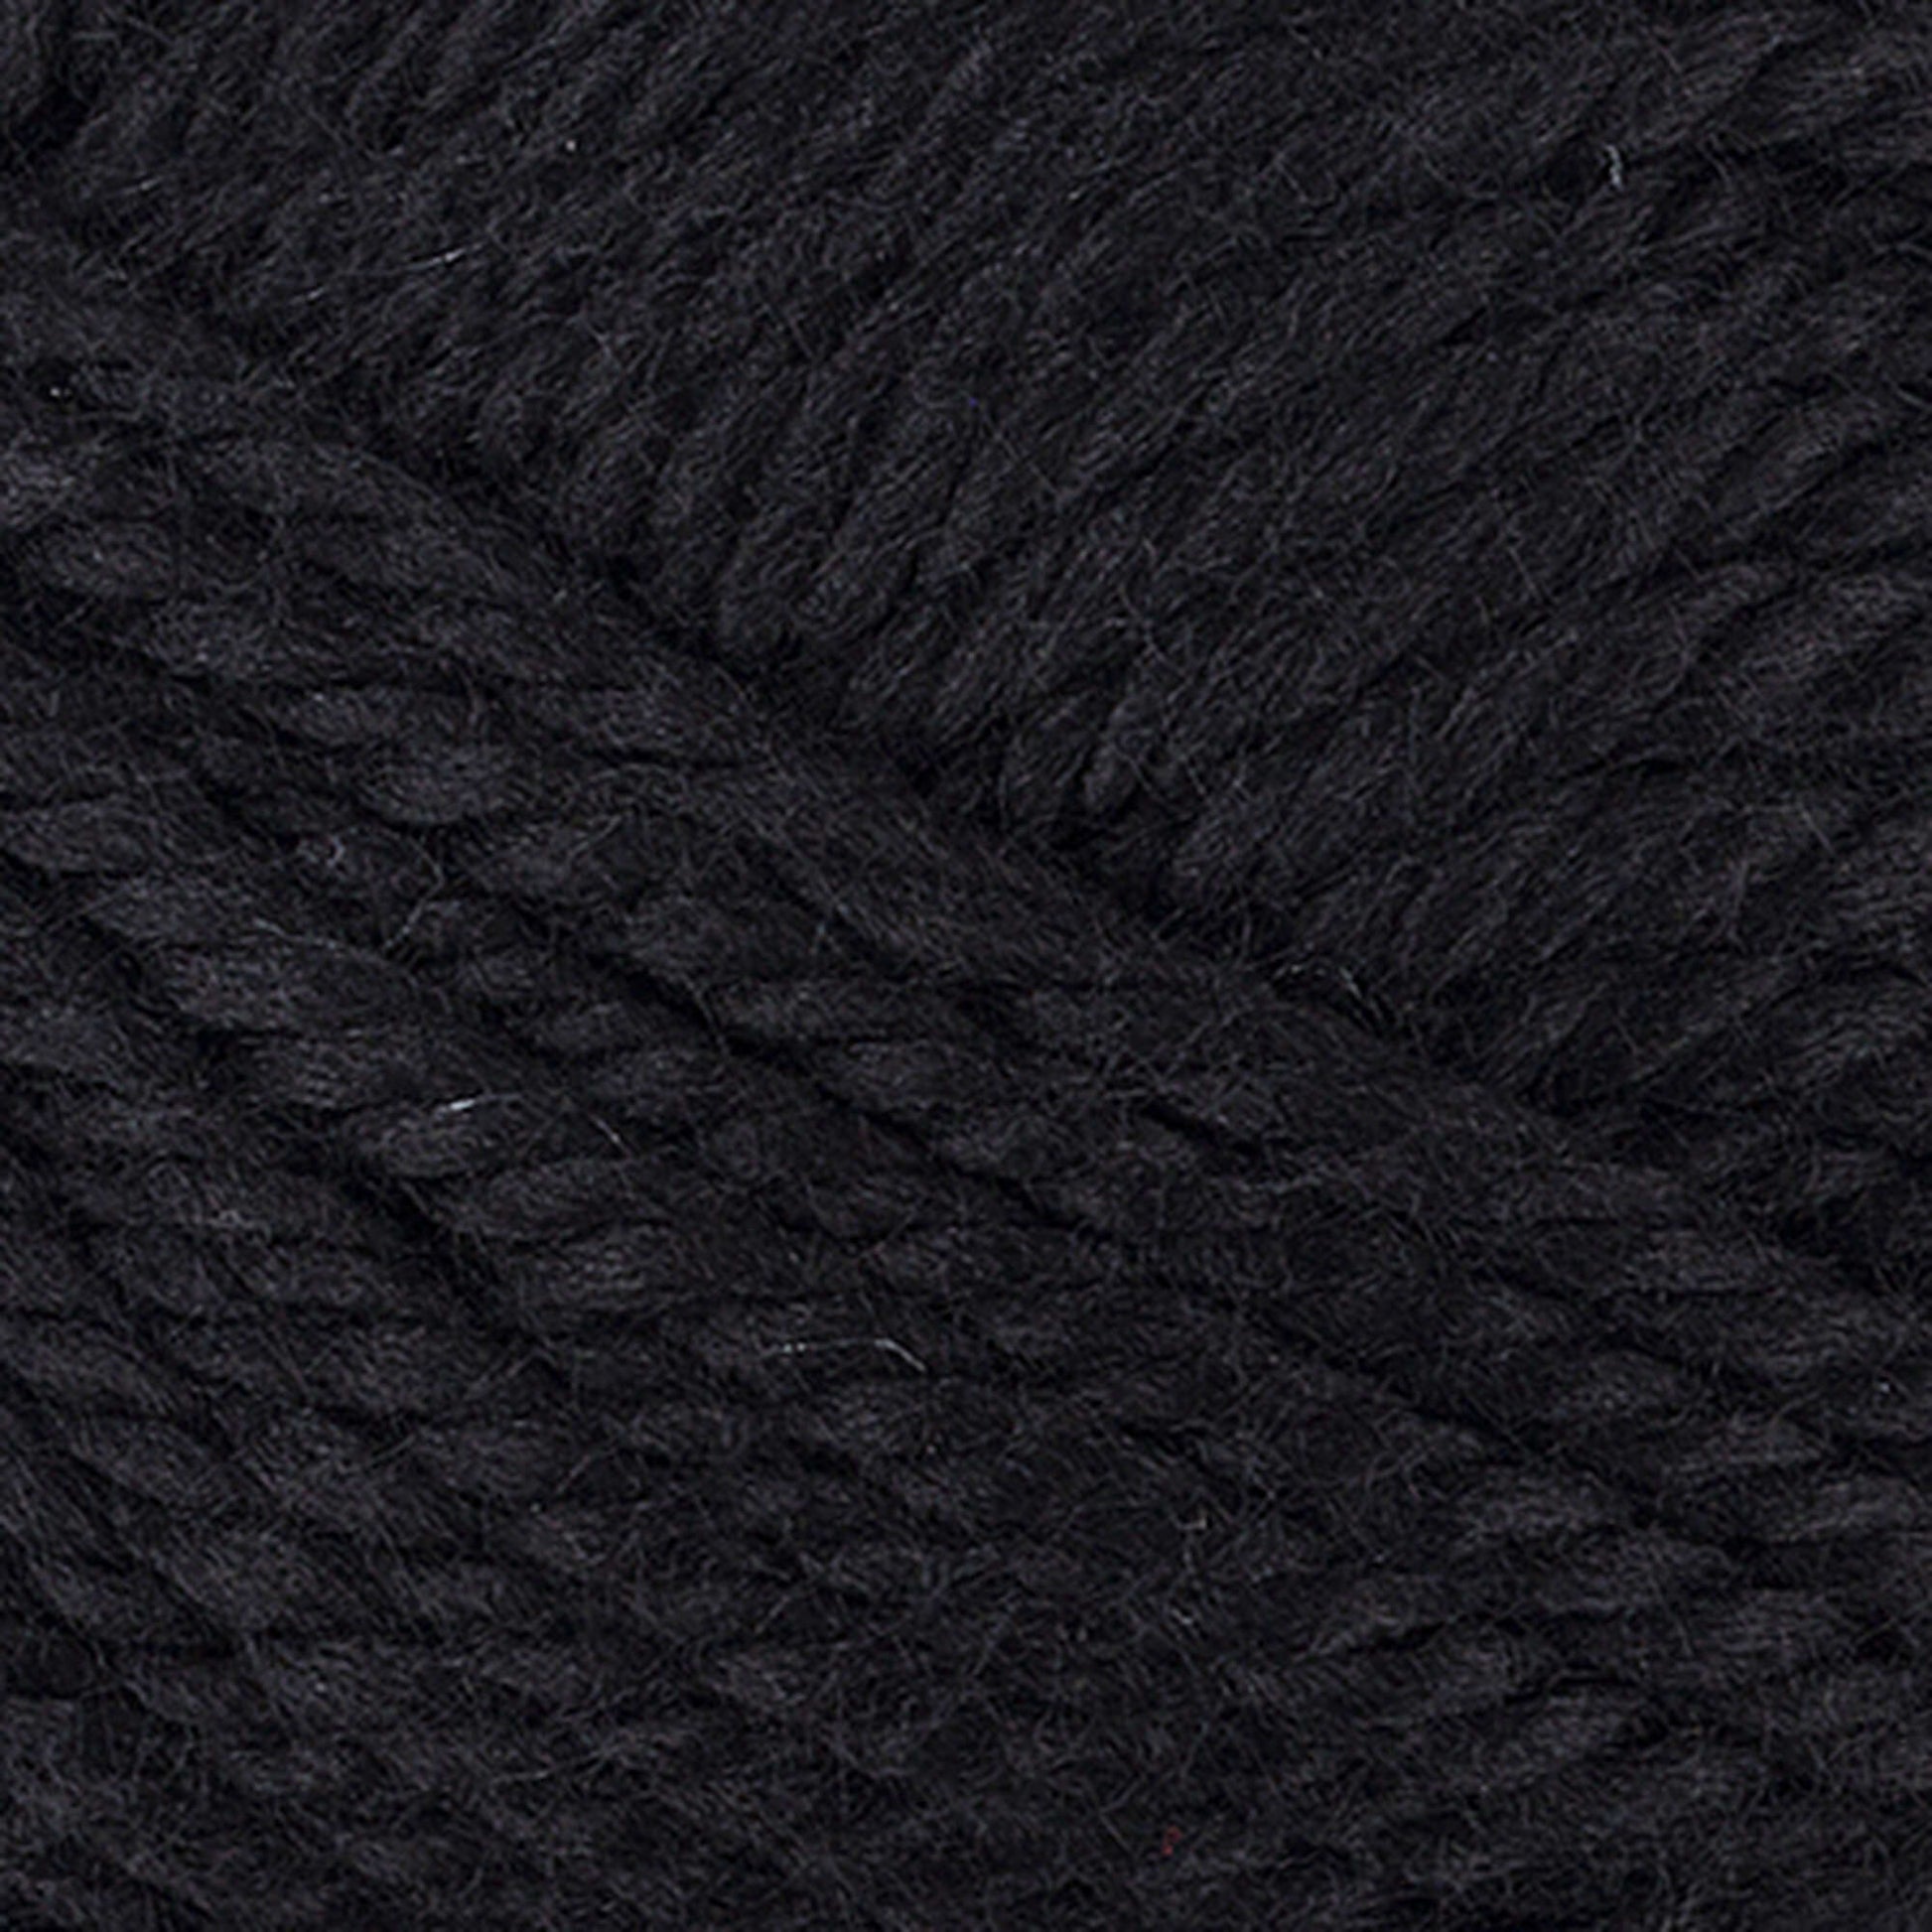 Dark Red Yarn — $18.00 per skein